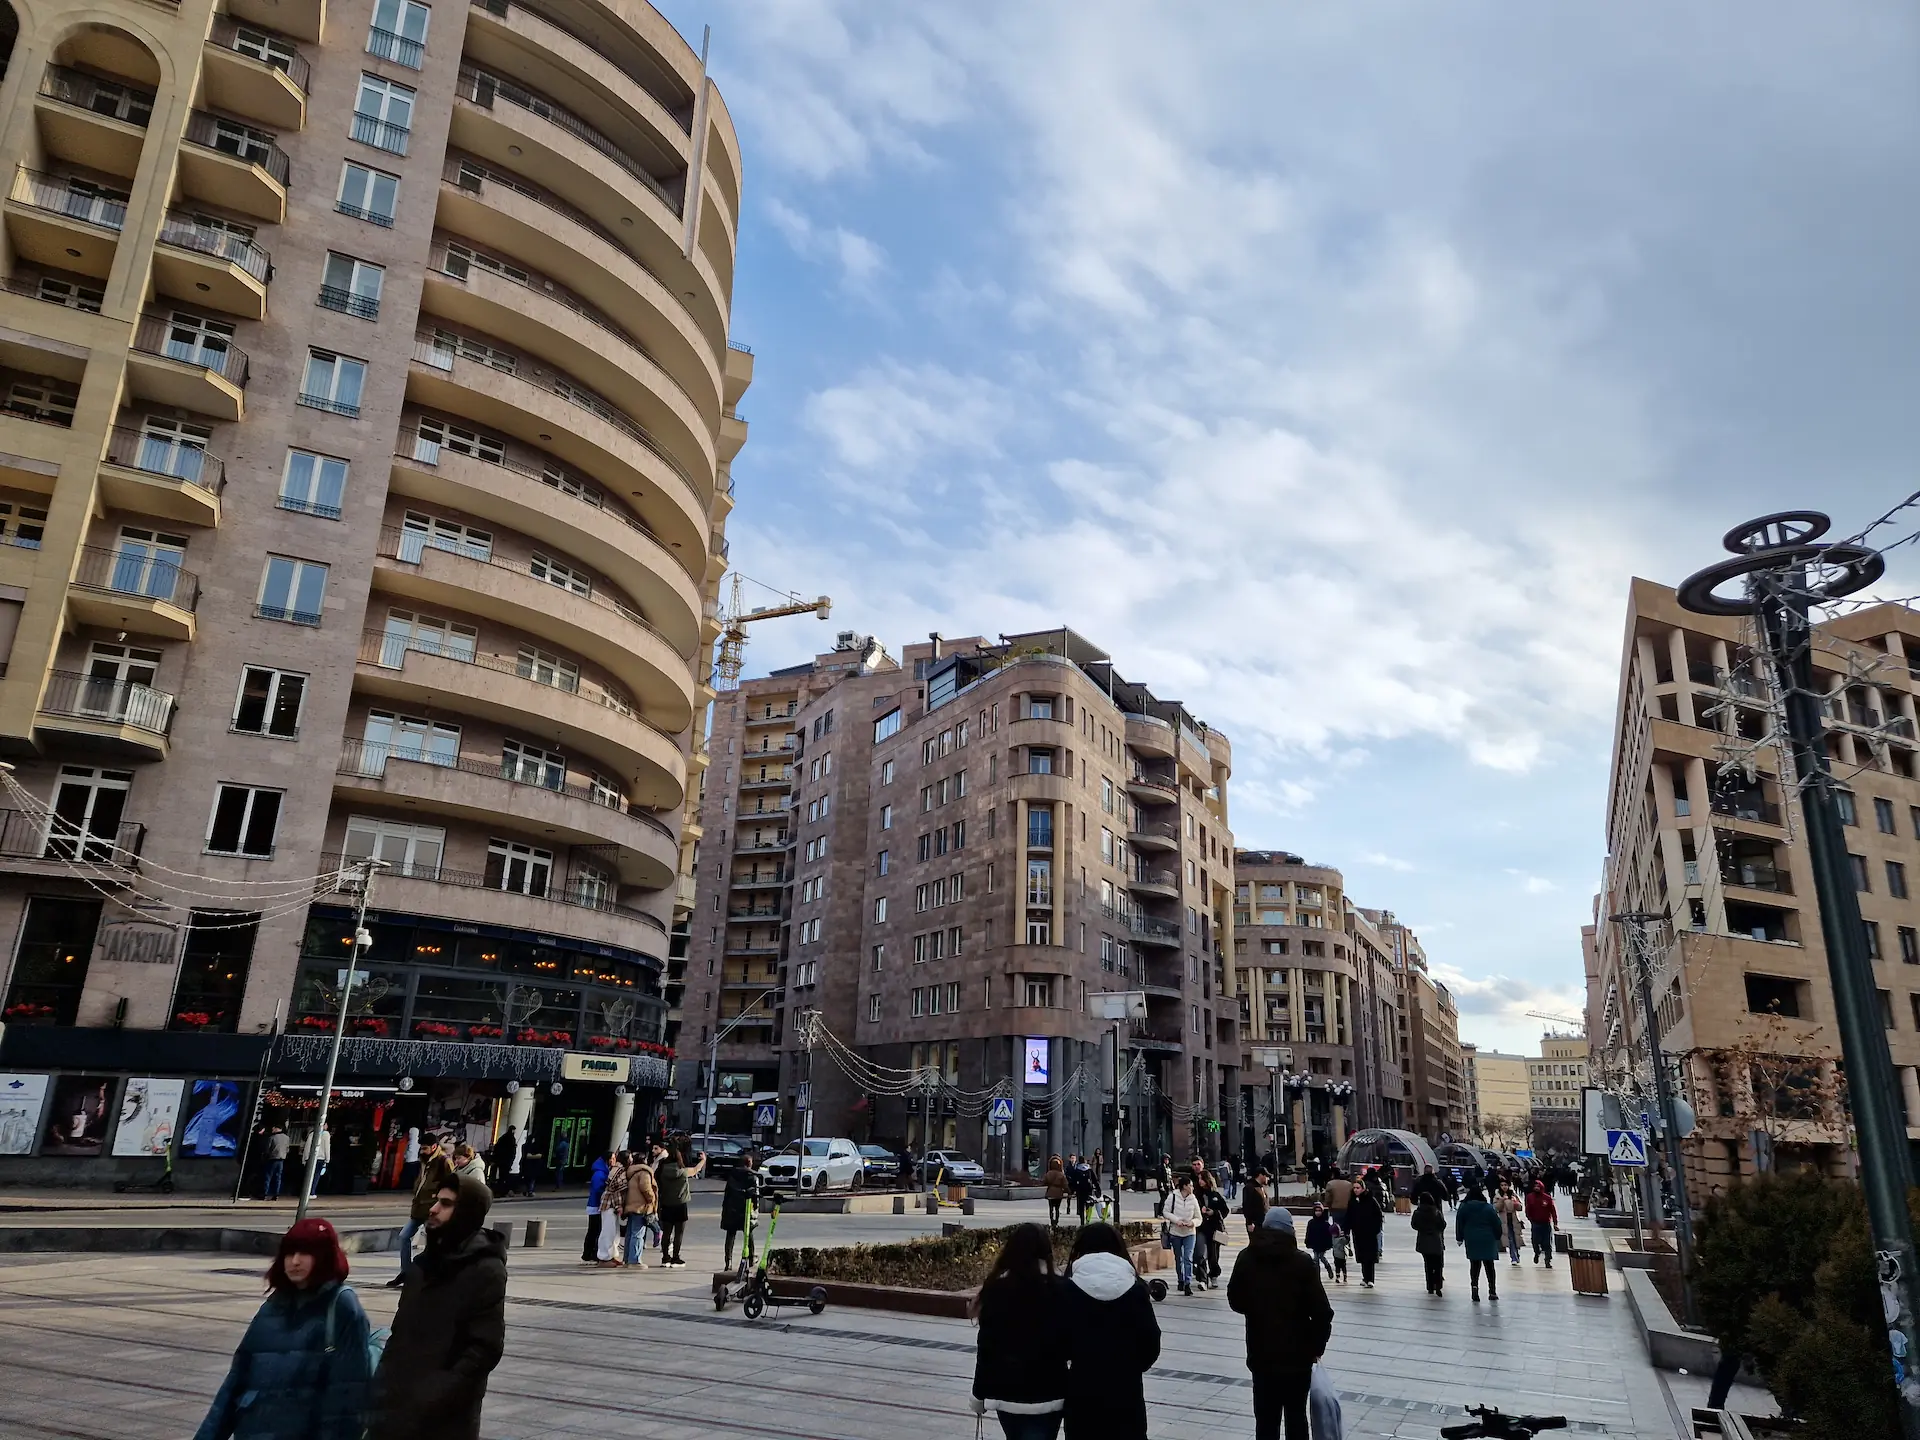 L'avenue centrale de Yerevan. Grand boulevard piéton bordé d'immeubles de plusieurs étages. Il y a du monde dans les rues.